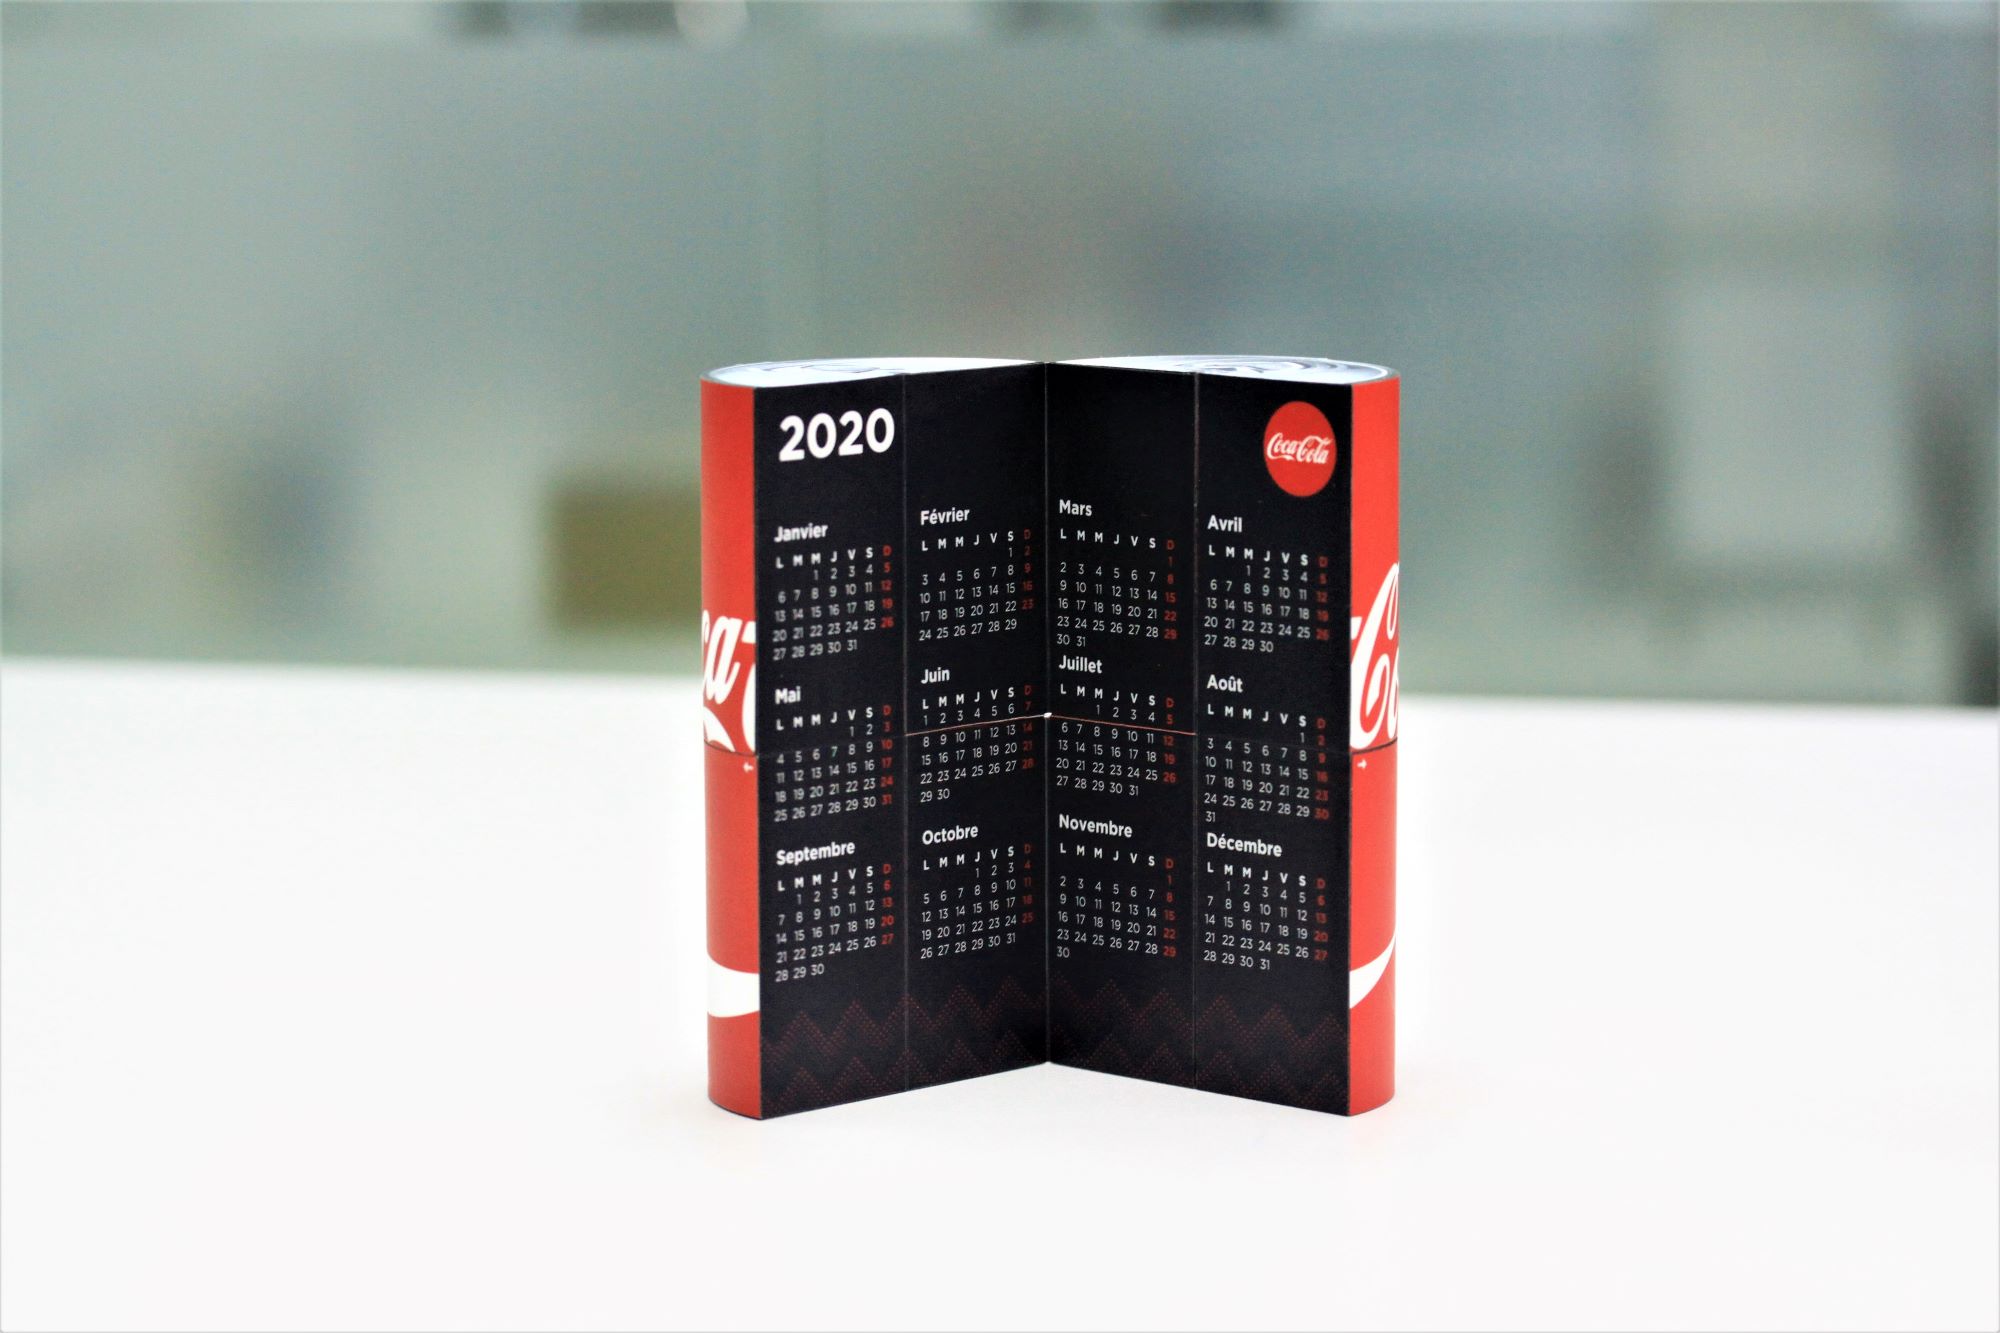 Coca-Cola – Calendar for distribution Partners - Intermed Asia